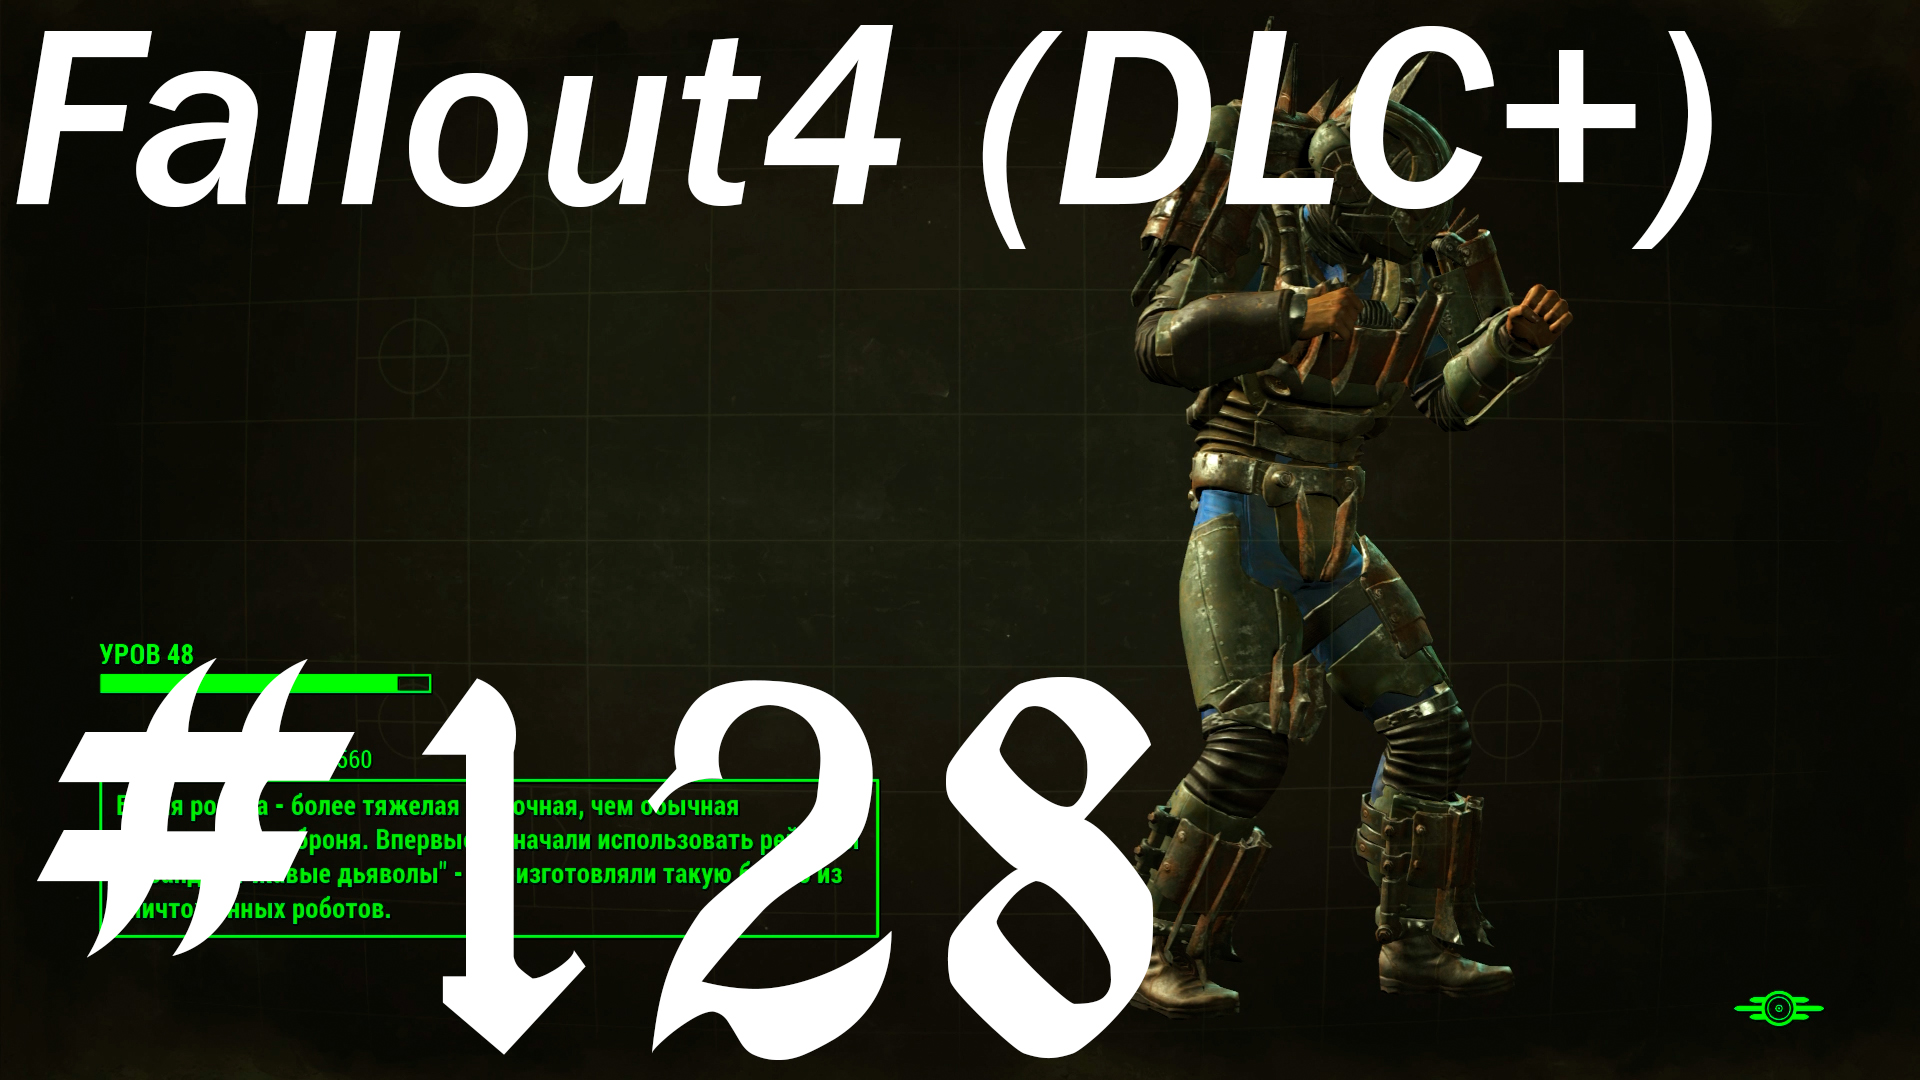 Fallout 4 + DLC, прохождение, часть 128